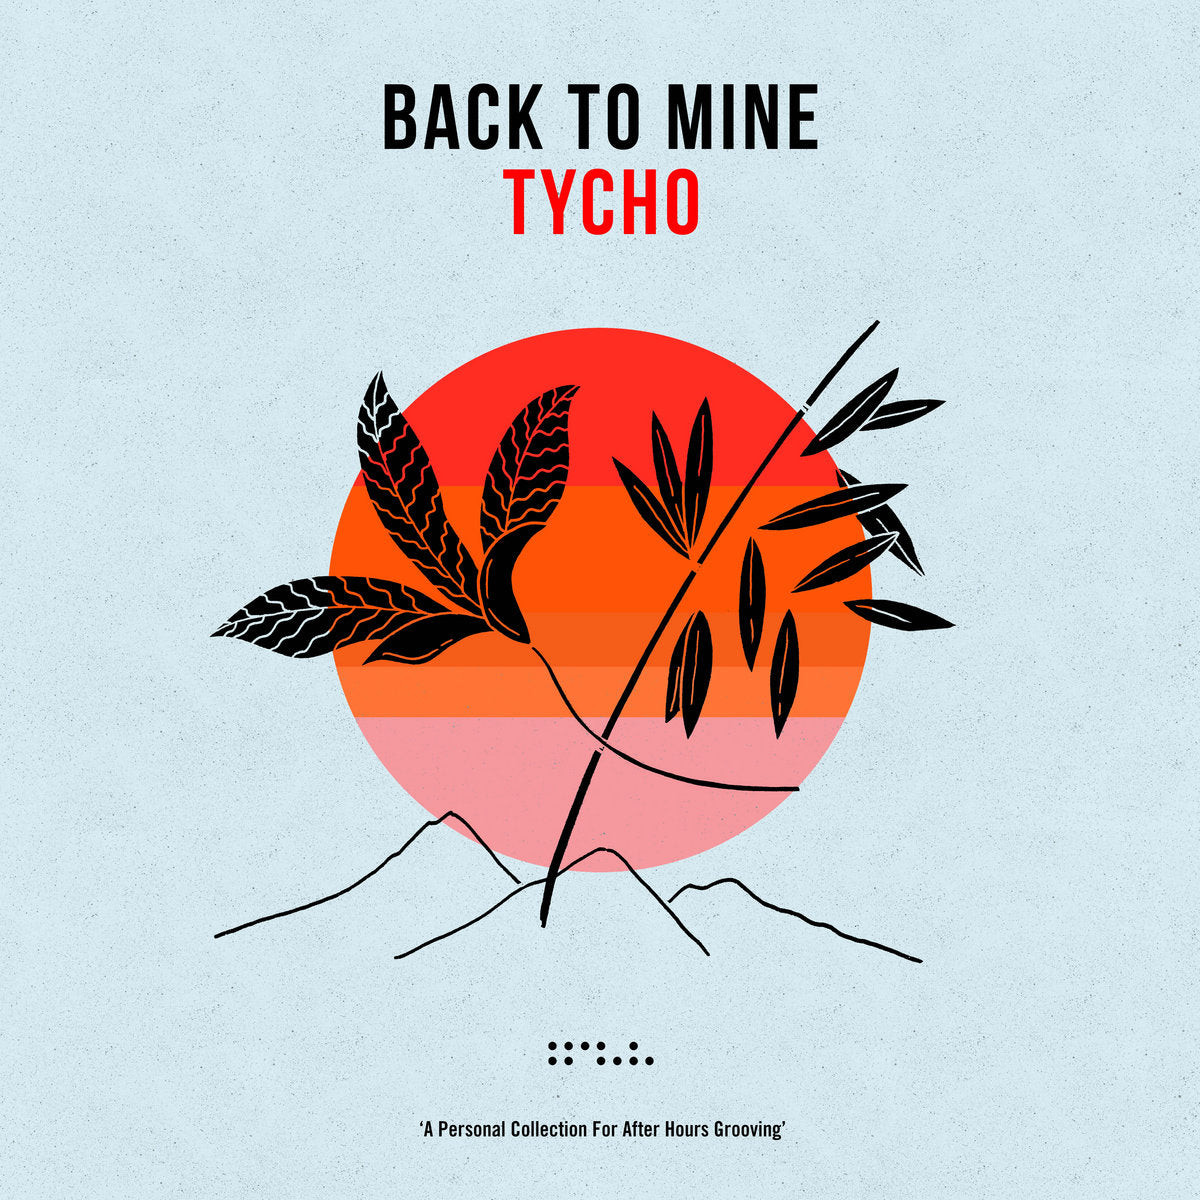 Tycho - Back To Mine